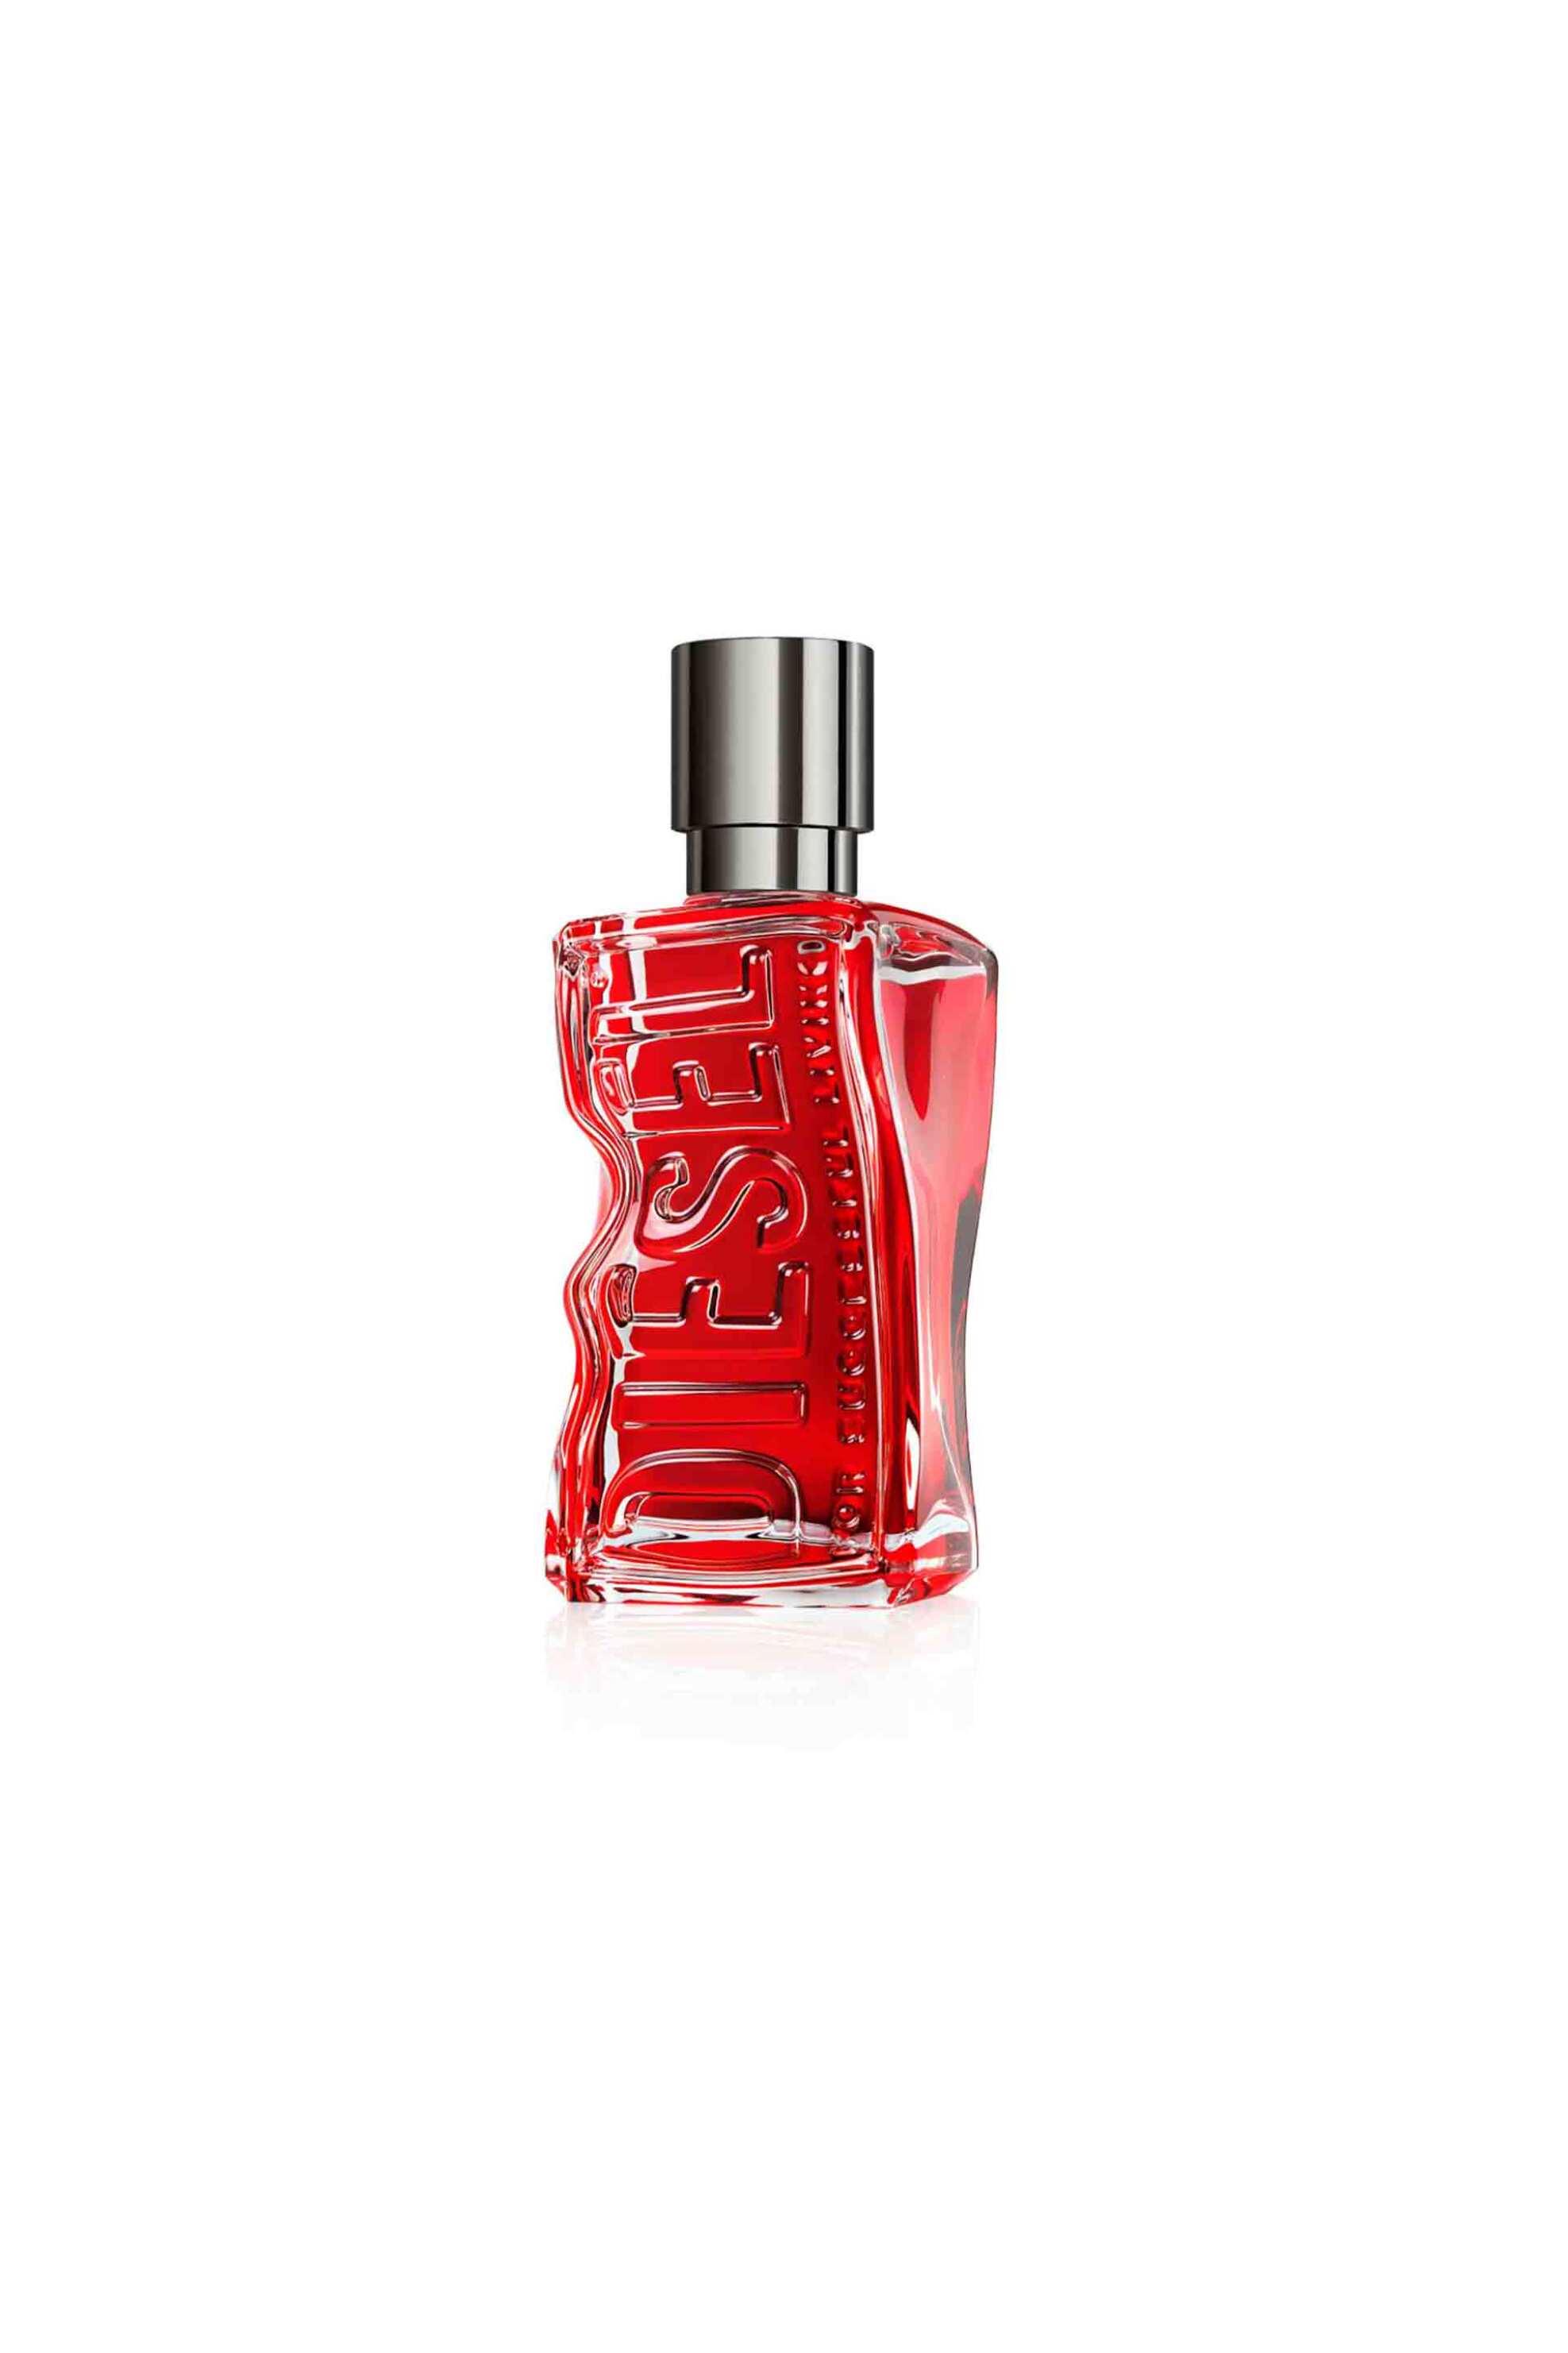 Ομορφιά > ΑΡΩΜΑΤΑ > Ανδρικά Αρώματα > Eau de Parfum - Parfum Diesel D Red Eau de Parfum